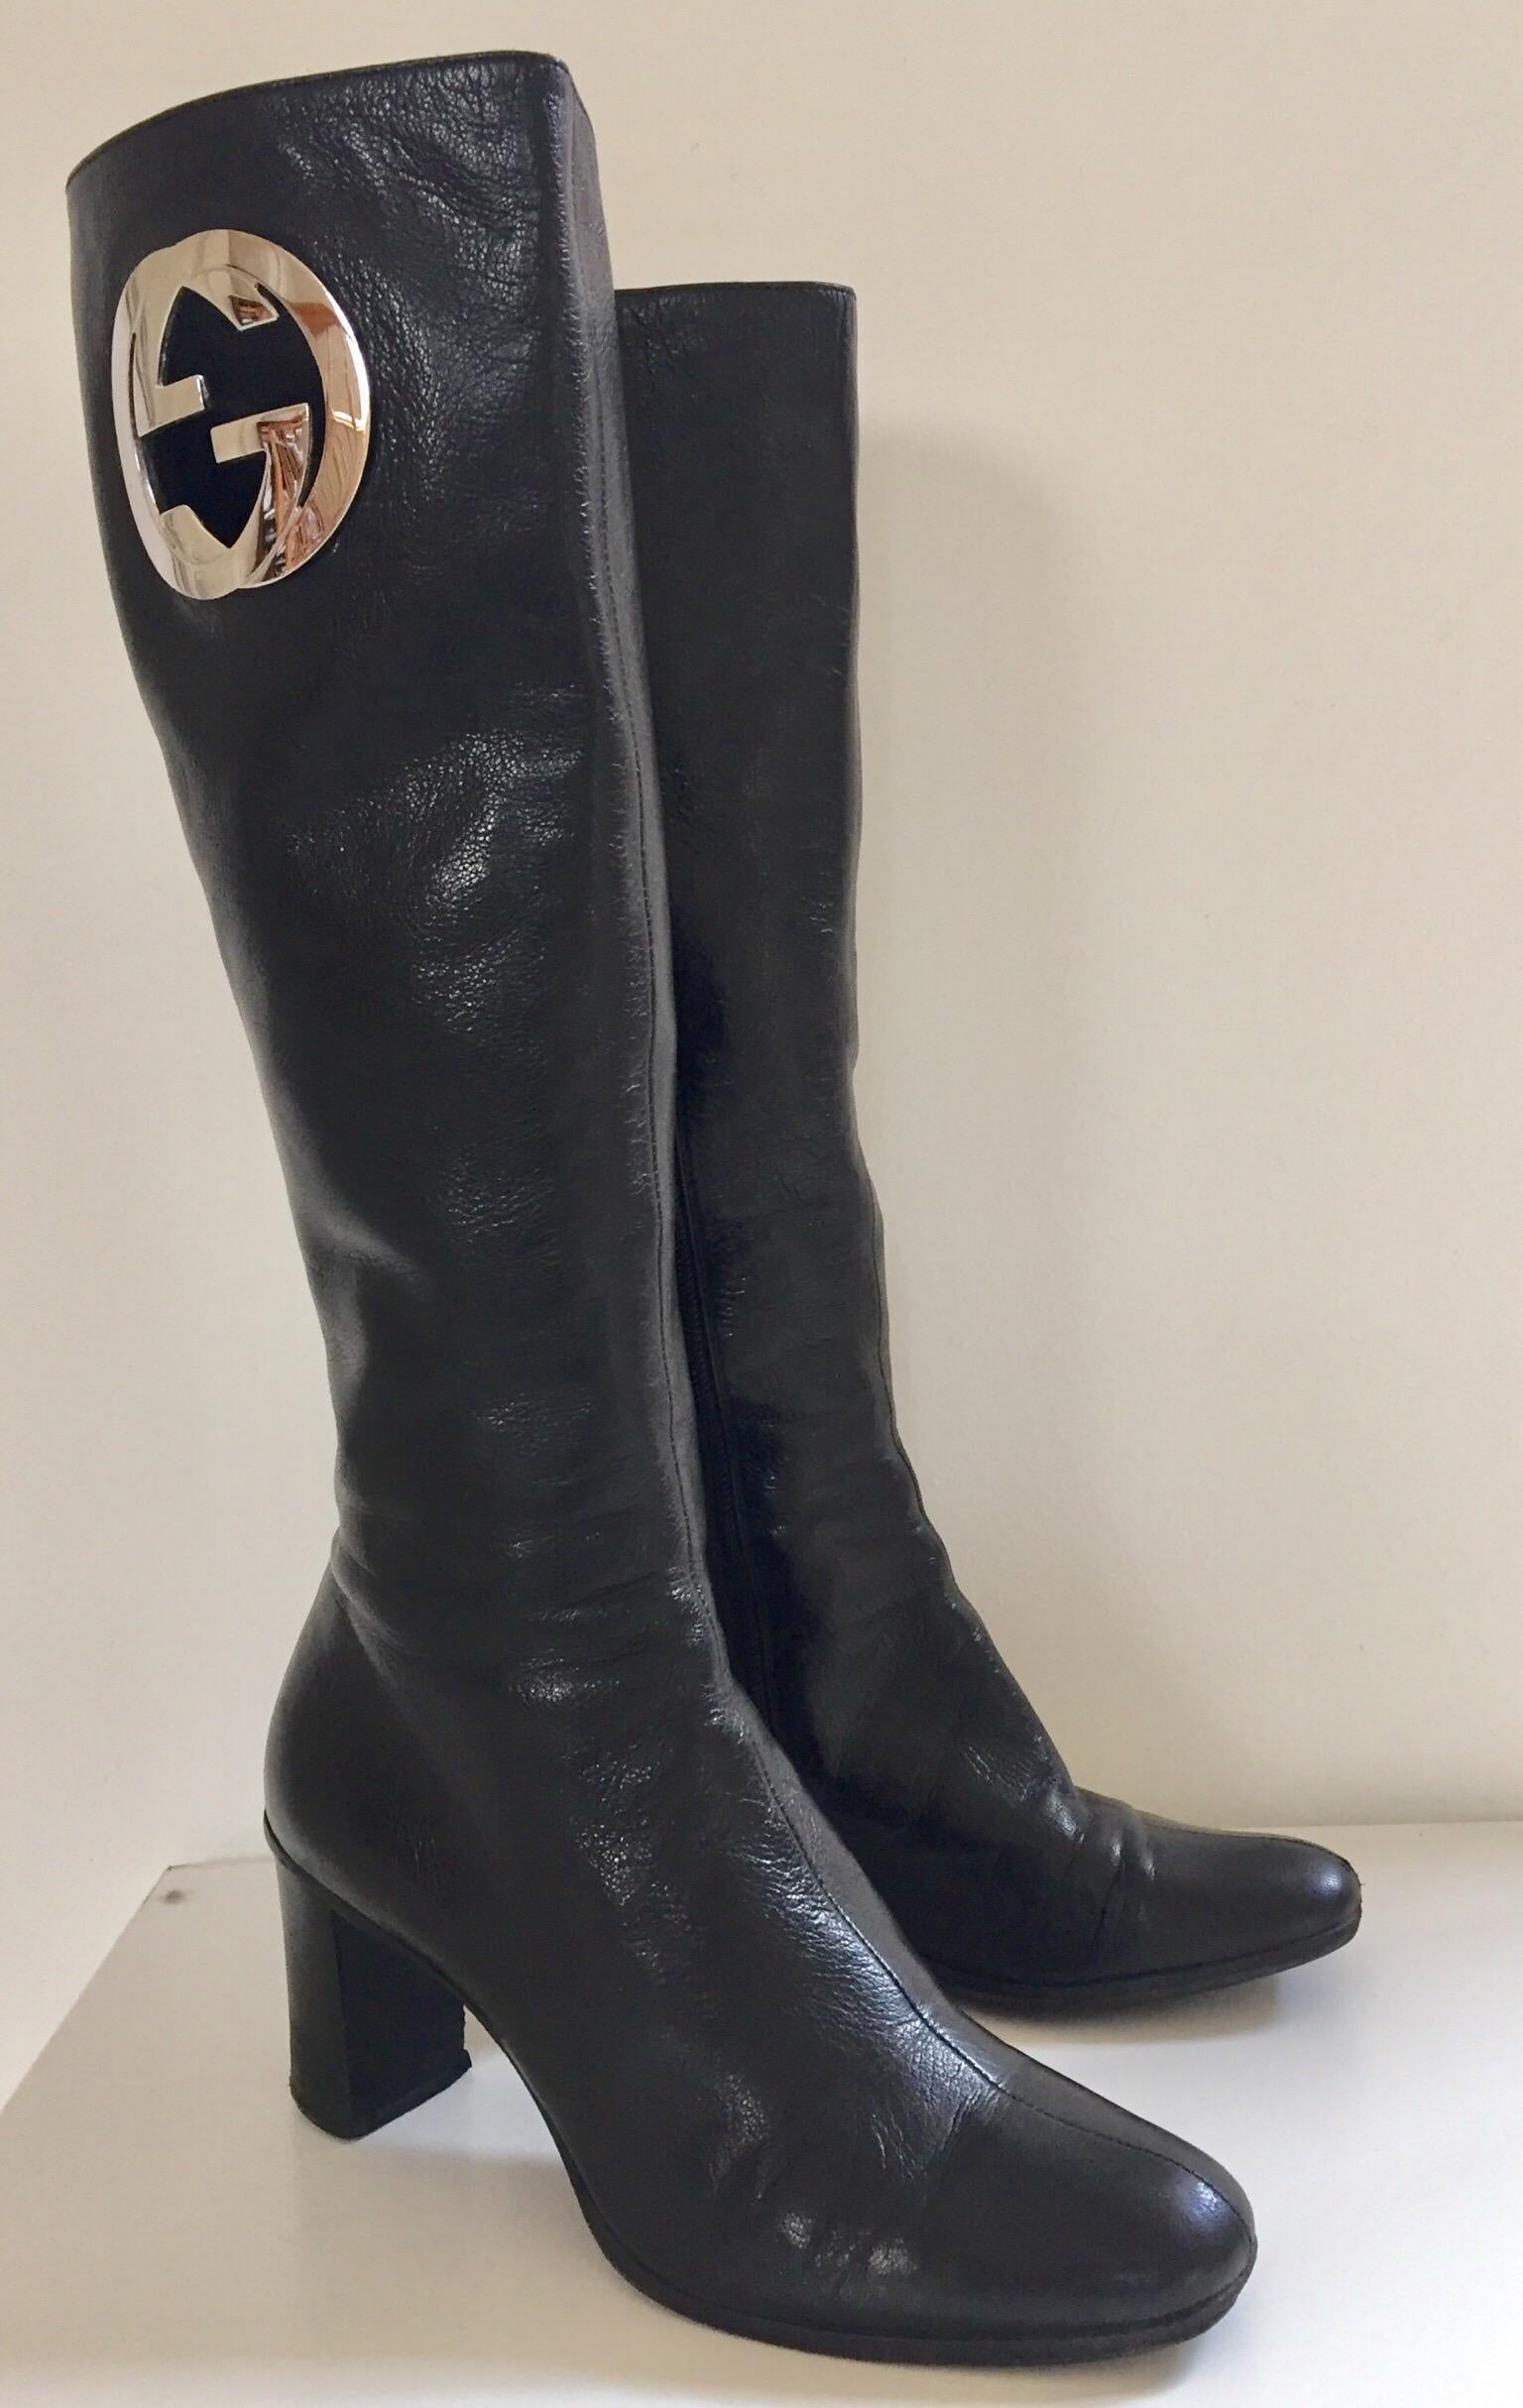 Vintage Tom Ford's Gucci pair of knee-high leather boots, circa 1999.
D'une silhouette élégante, ces bottes vintage Gucci sont confectionnées en cuir souple d'agneau noir et dotées d'un talon bloc, d'une fermeture éclair latérale et d'un monogramme